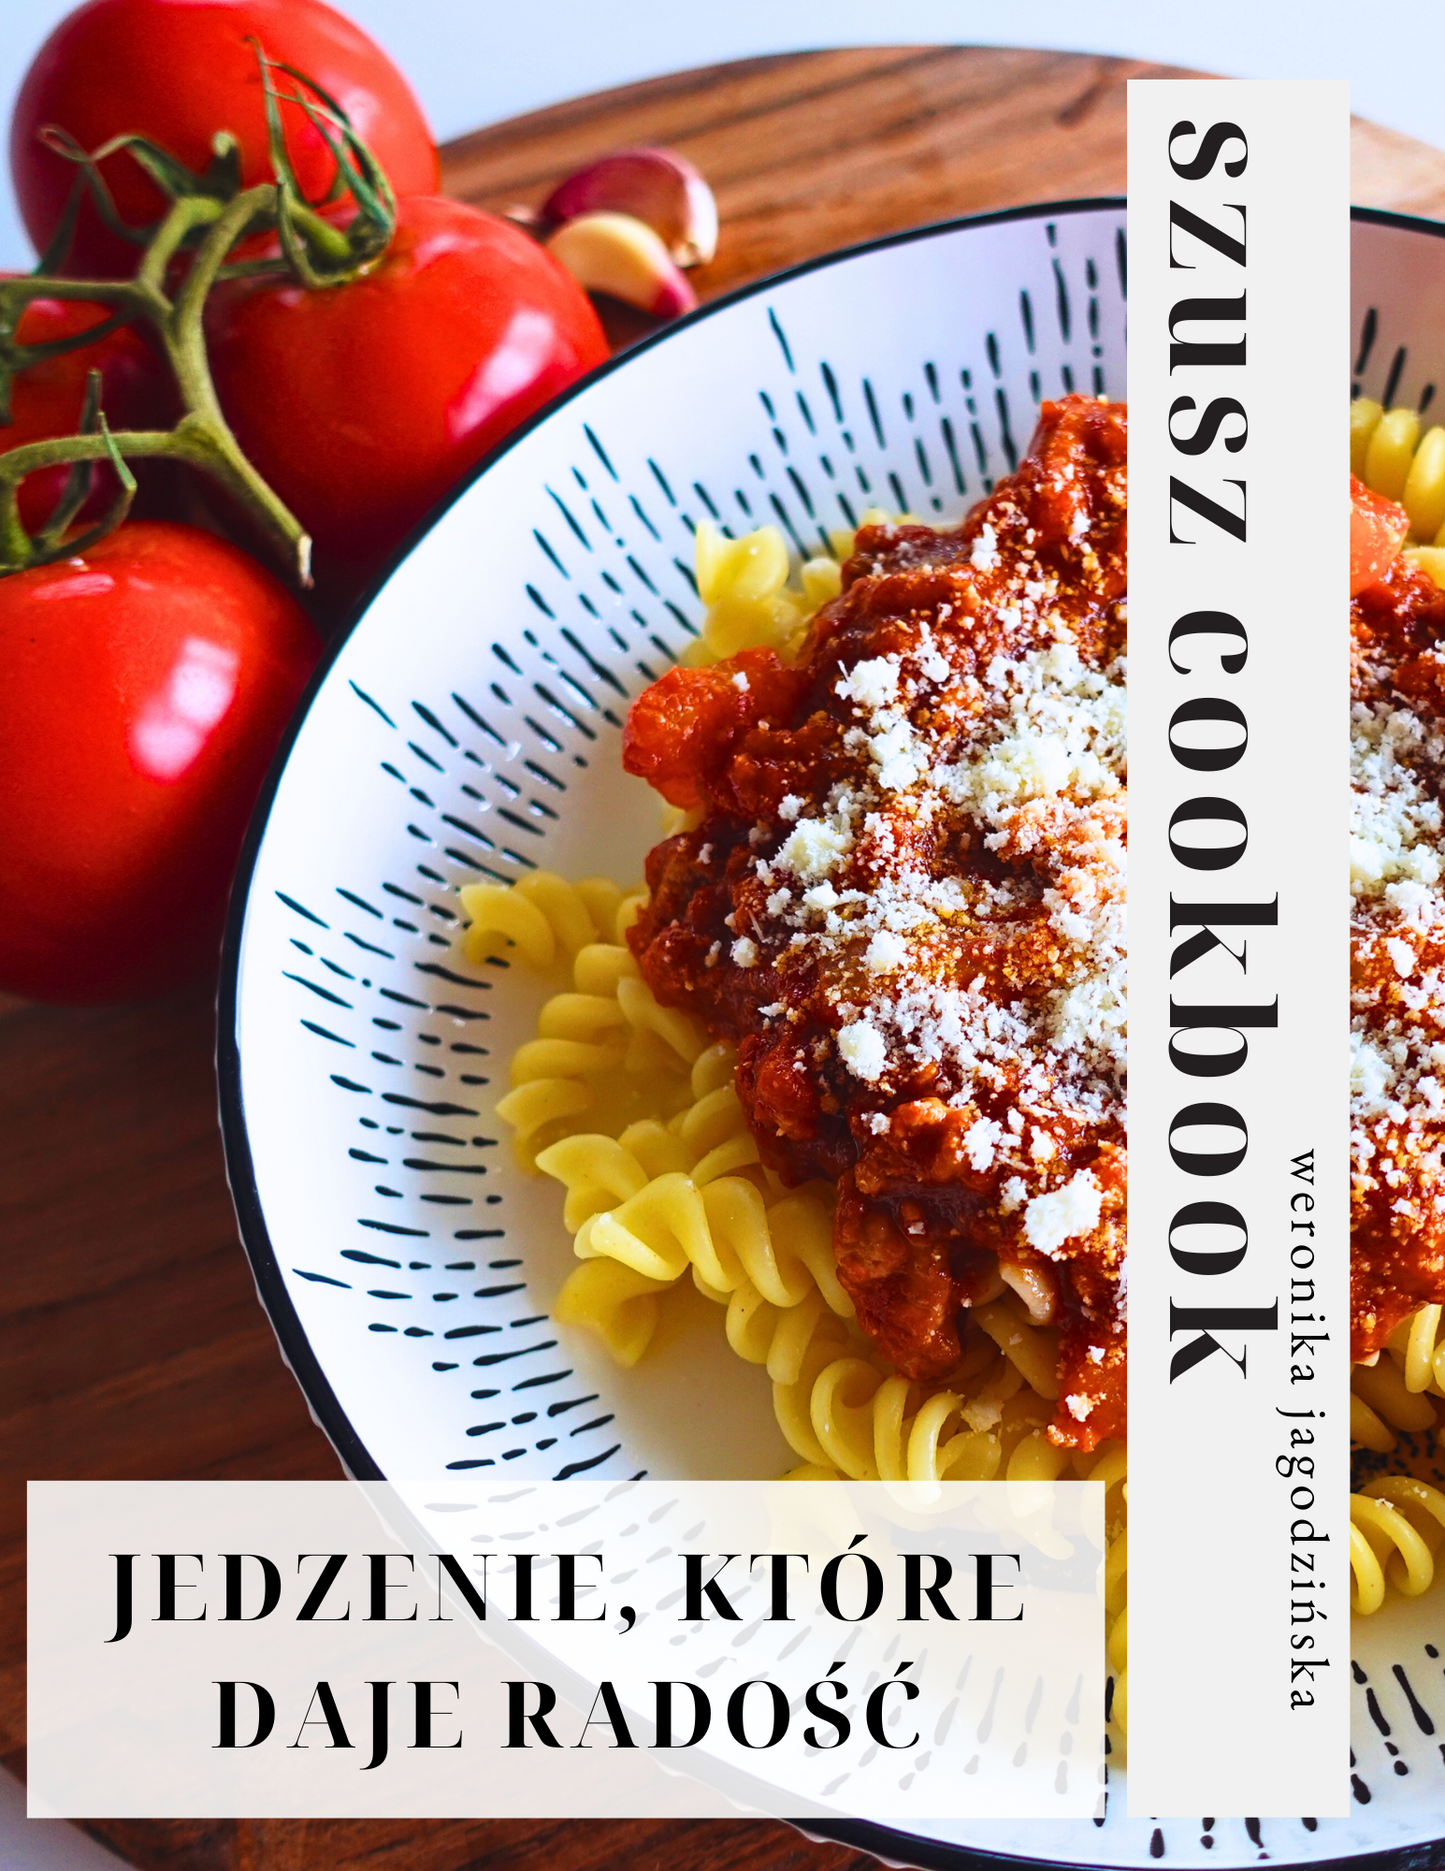 E-book kulinarny “Jedzenie, które daje radość”